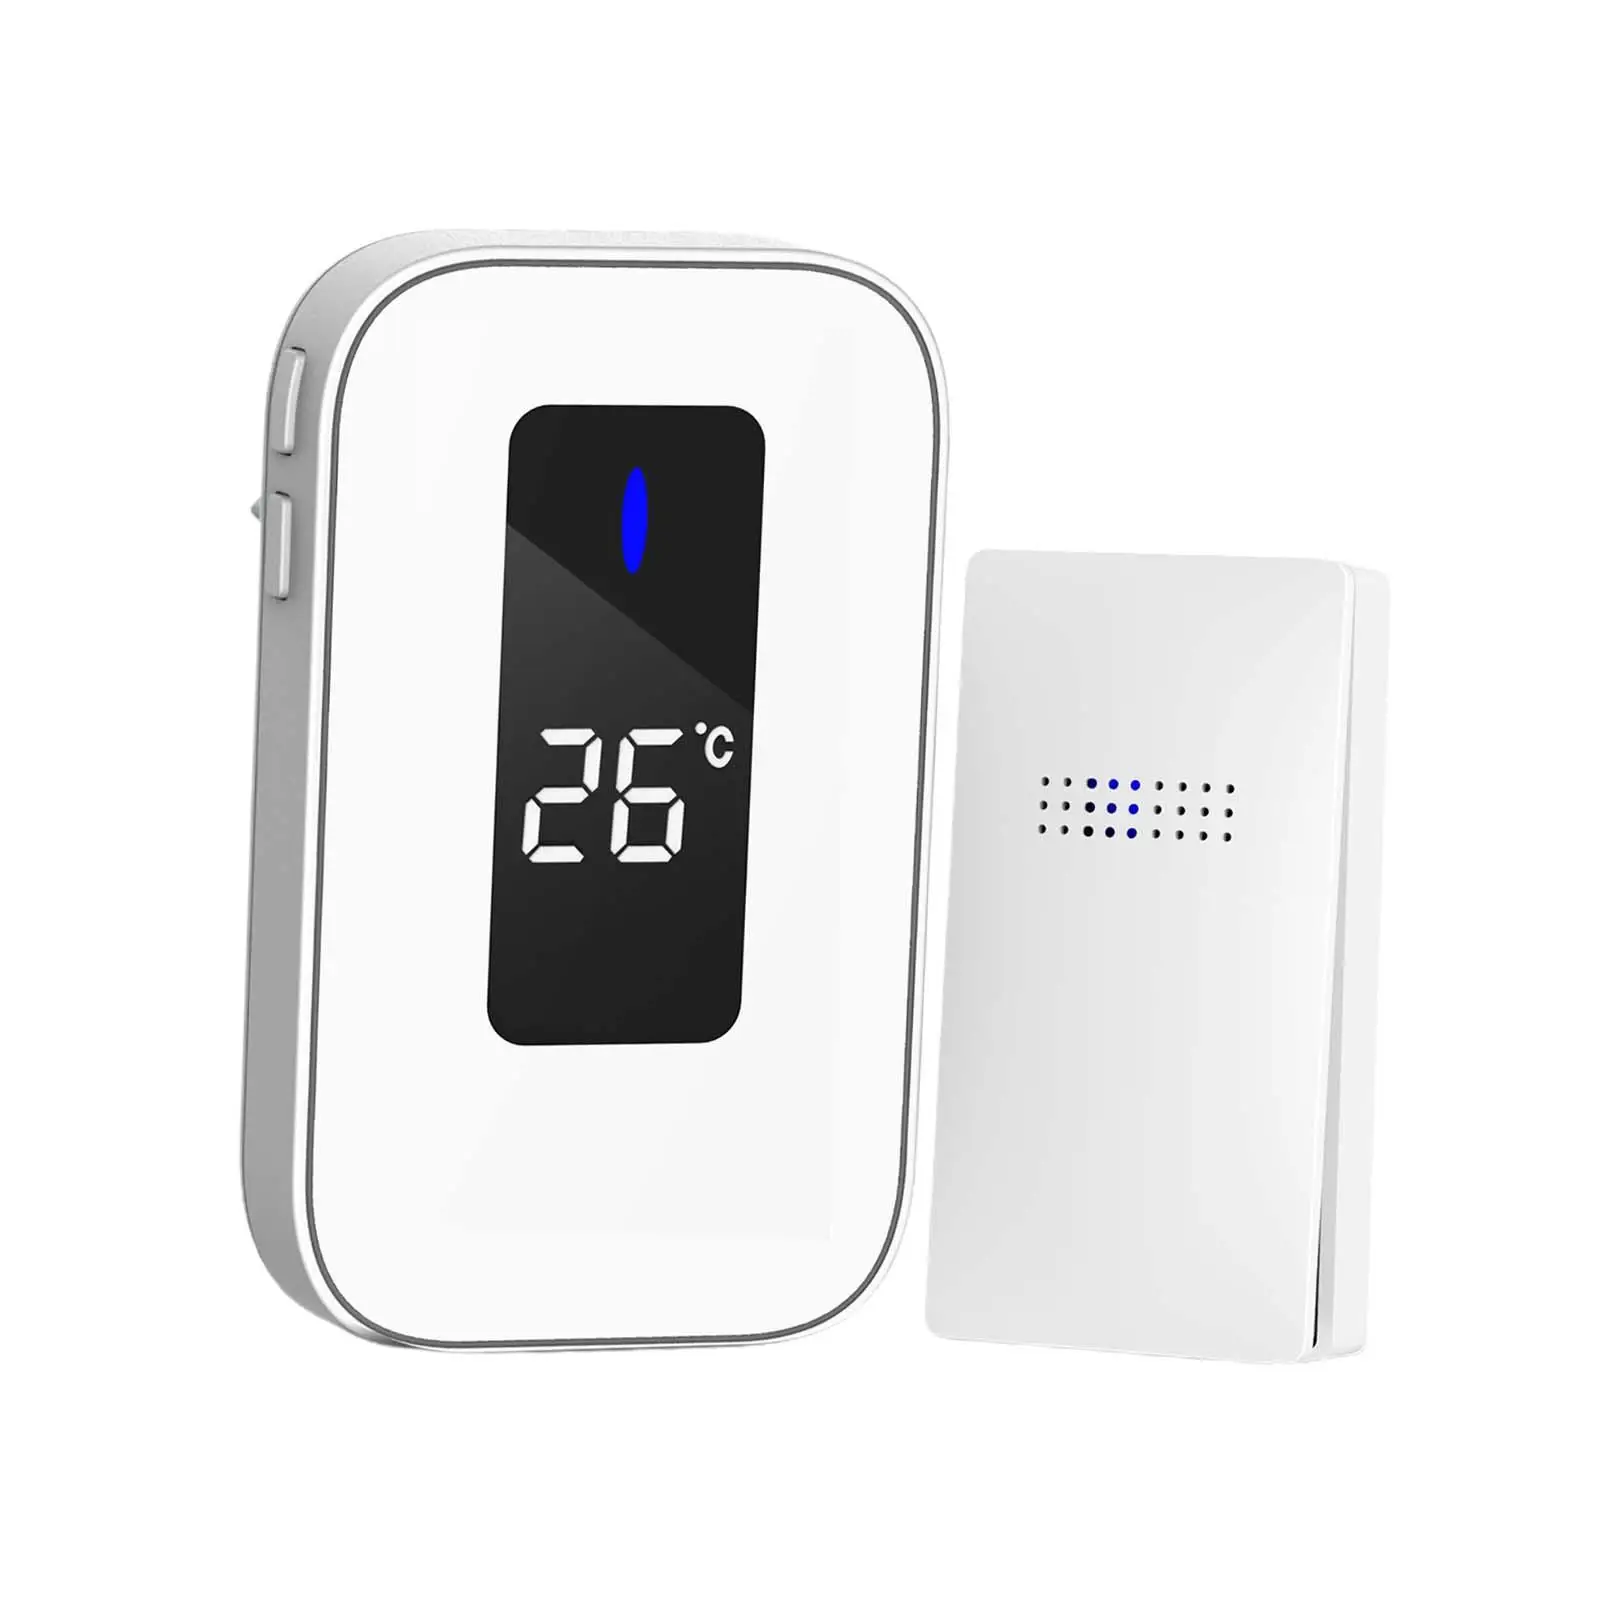 Outdoor Wireless Doorbell Upgraded Self Powered Digital Doorphone Safety Sensitive Smart for Bedroom Office Apartment Hotel Door